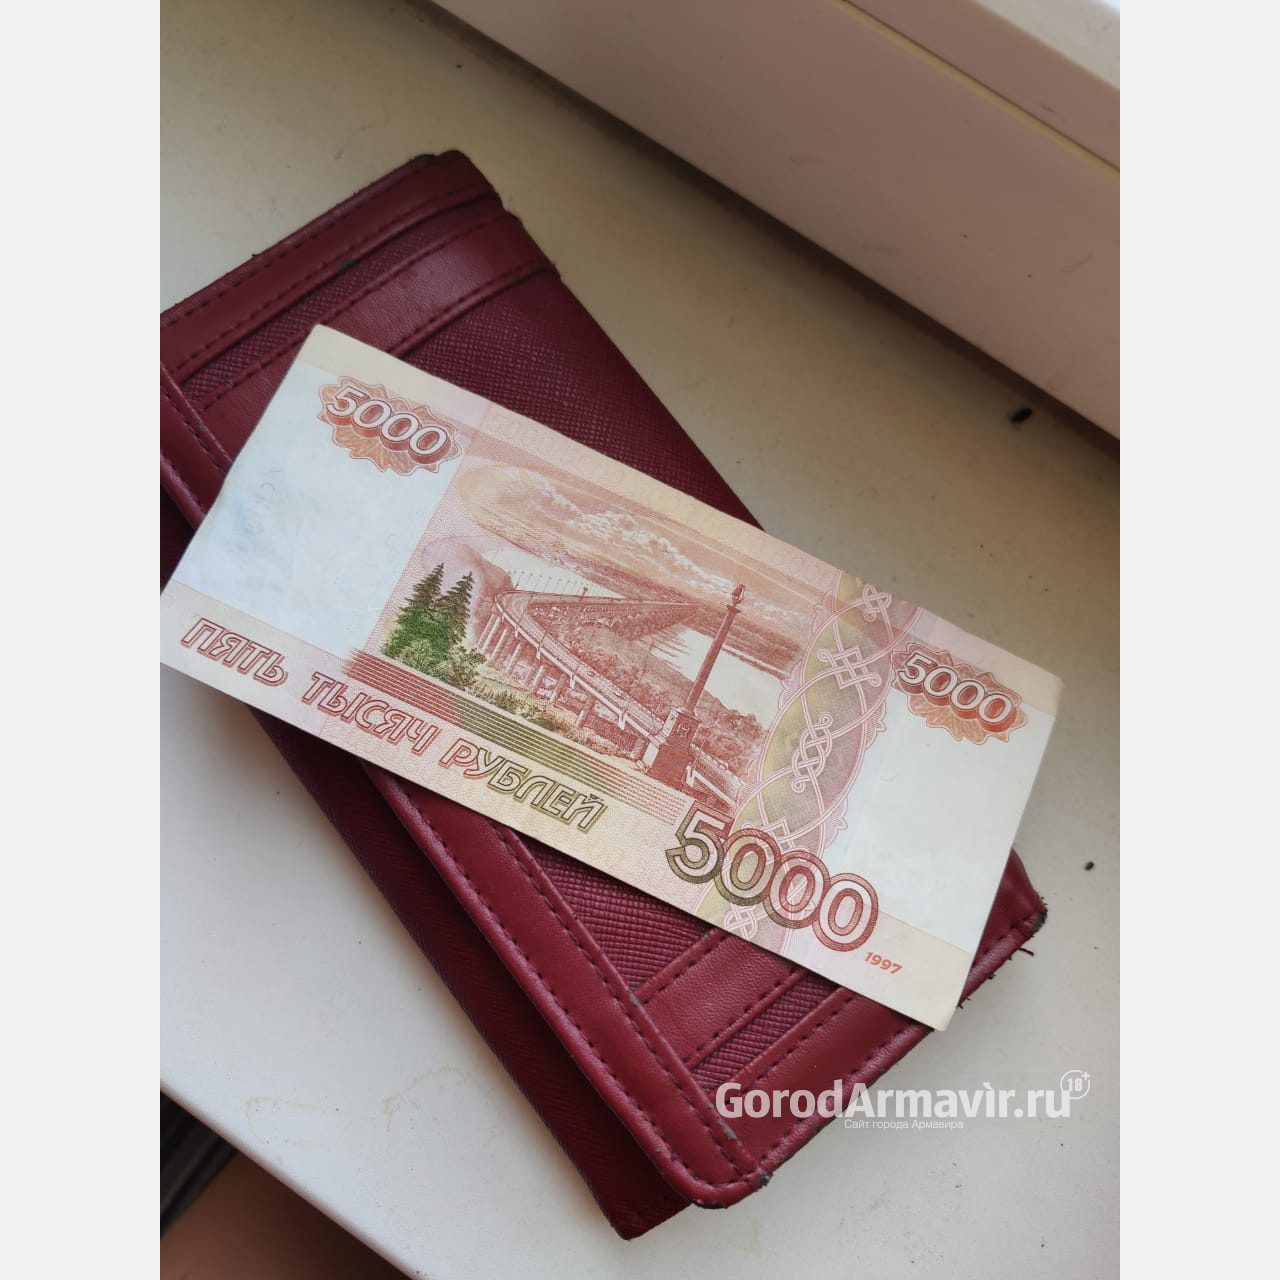 Мошенник попросил разменять деньги и обманул продавца на 7 тыс руб в Армавире 